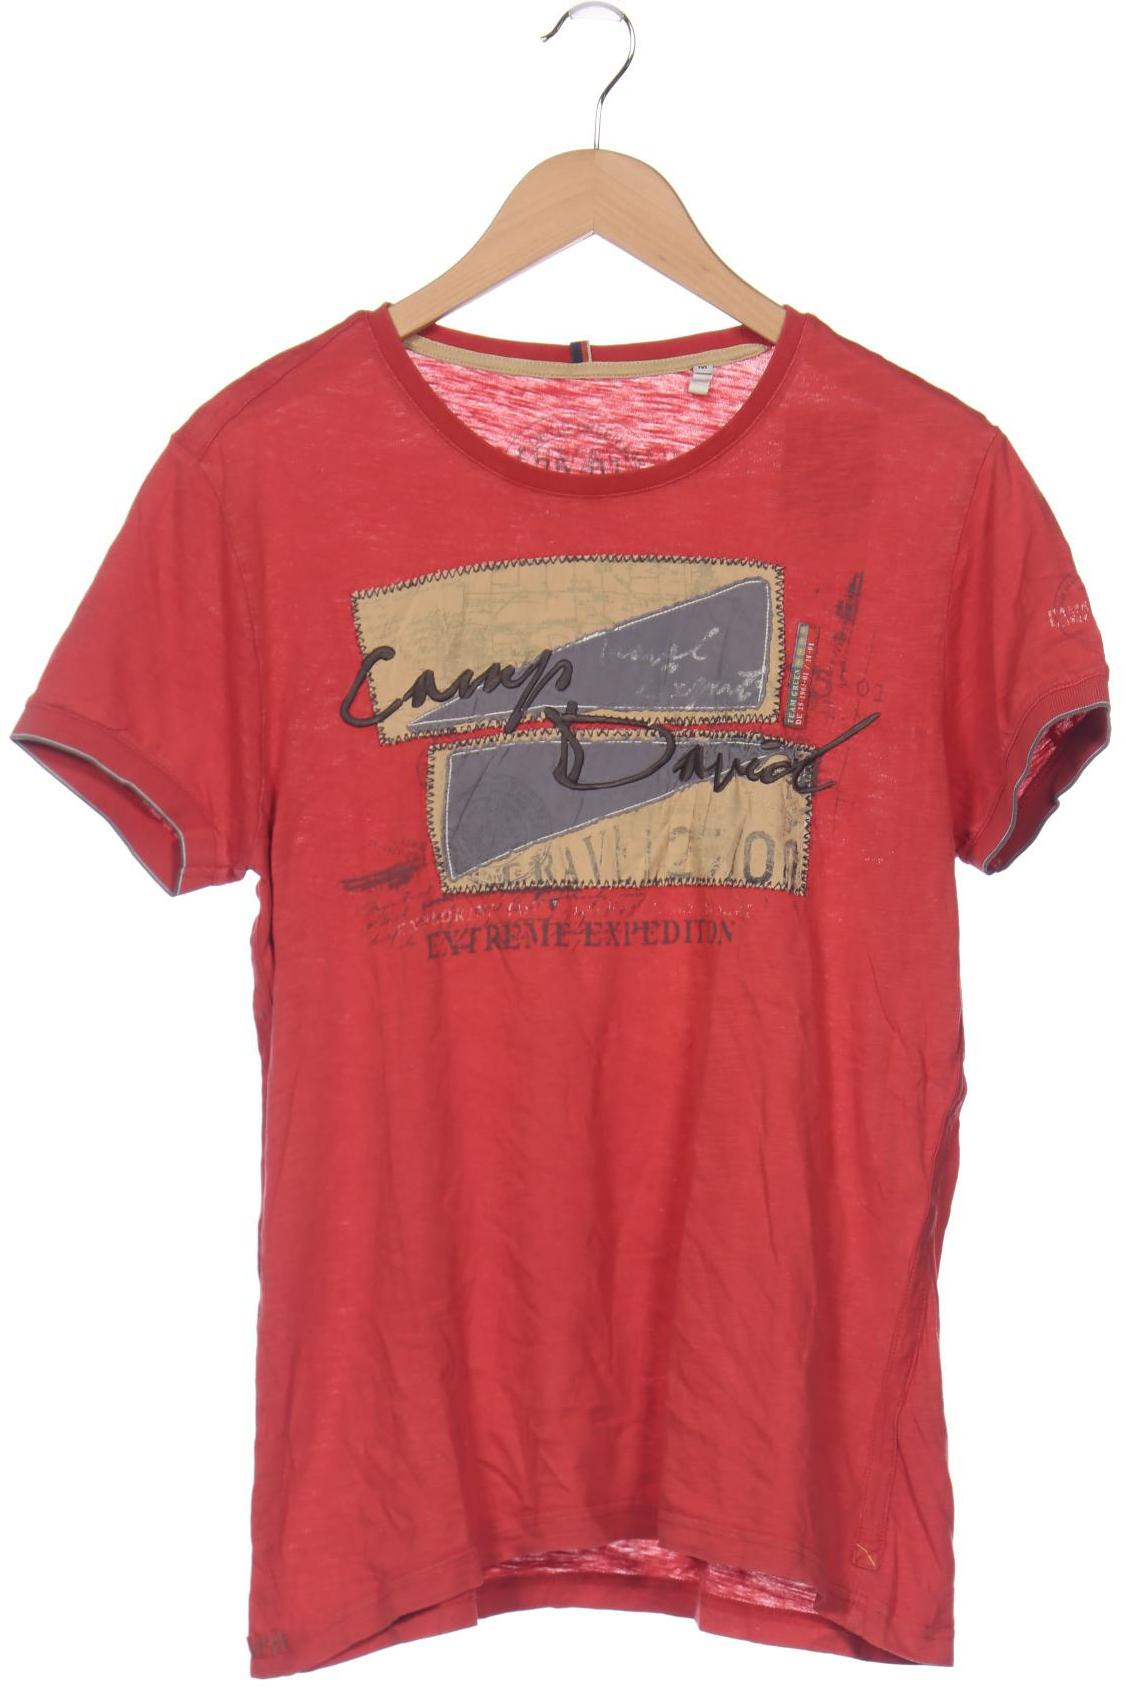 Camp David Herren T-Shirt, rot von camp david